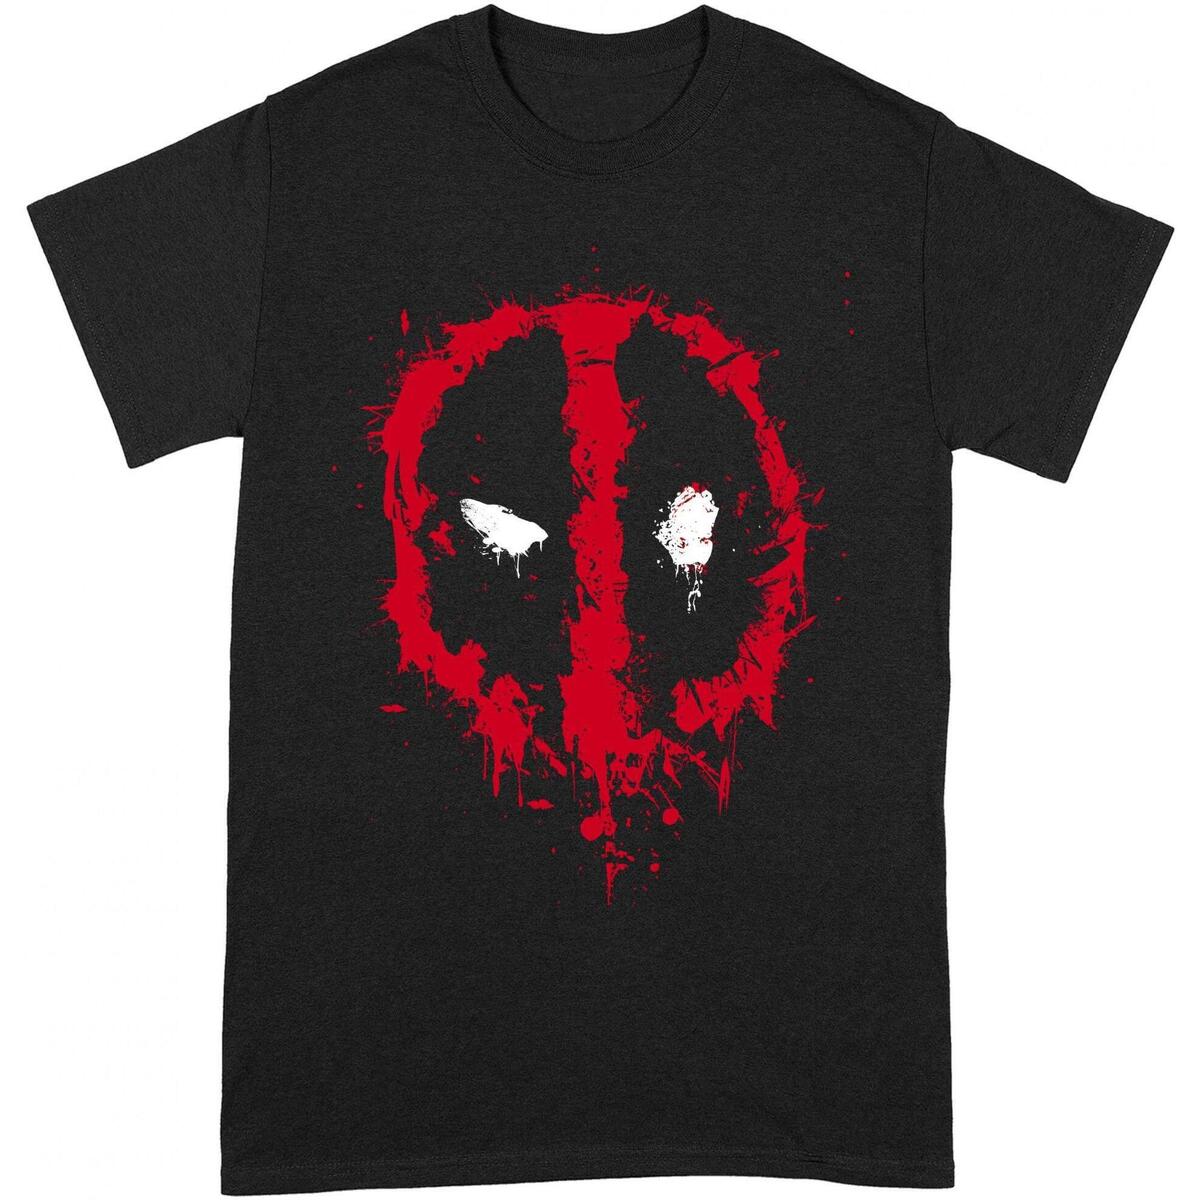 Vêtements T-shirts manches longues Deadpool BI130 Noir